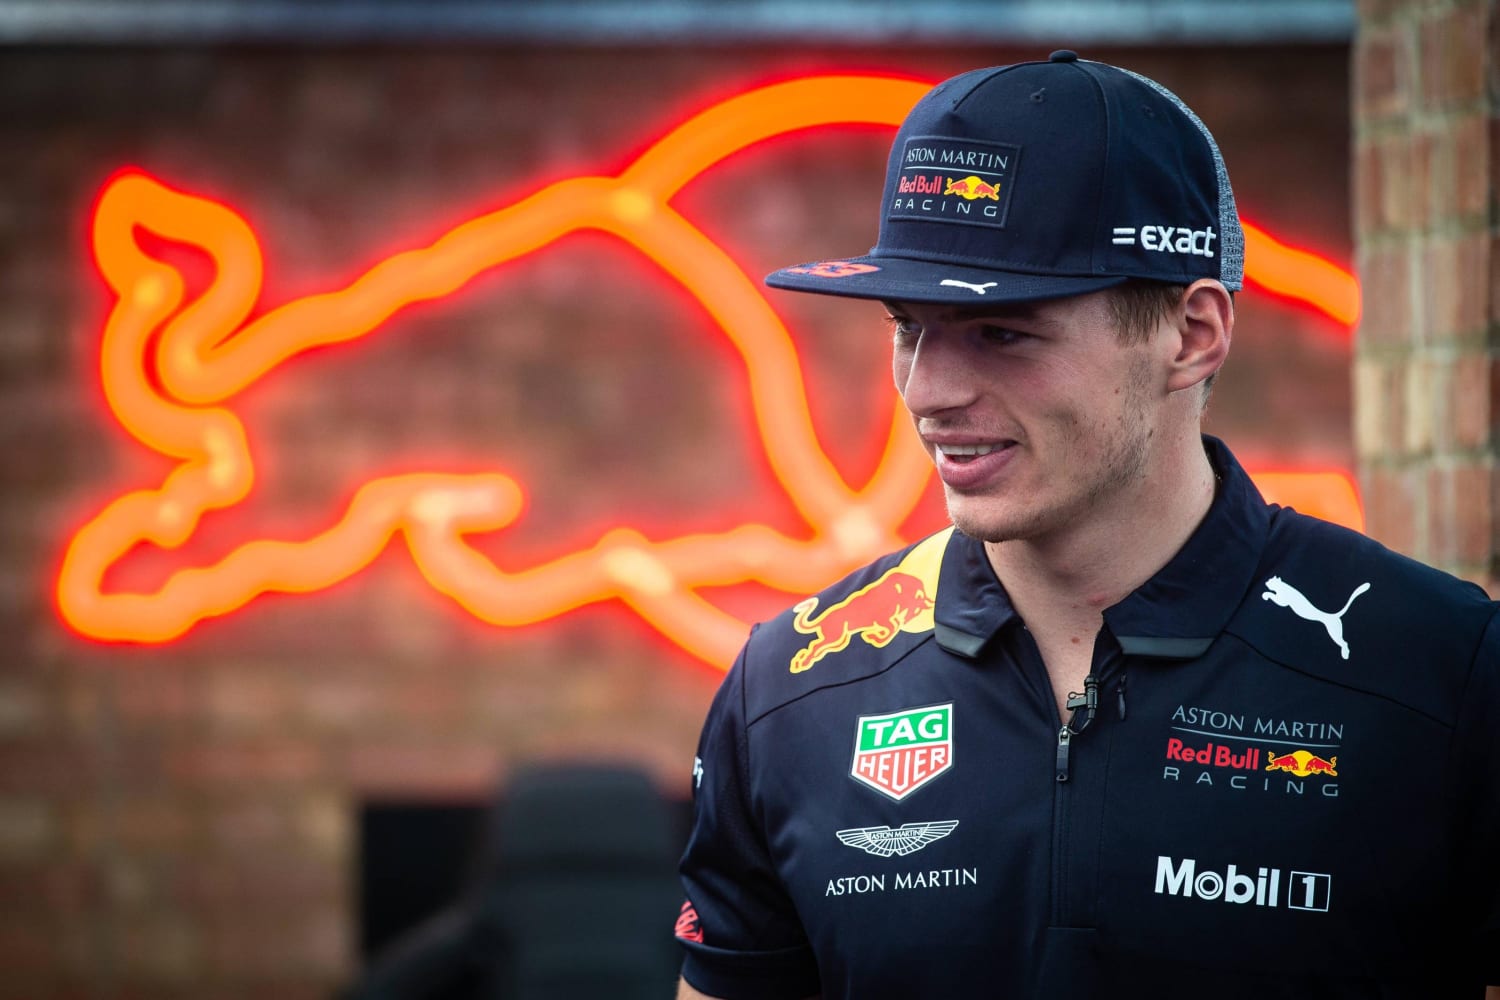 een vergoeding zijde Andes F1 2018 preview: Max Verstappen hits the track